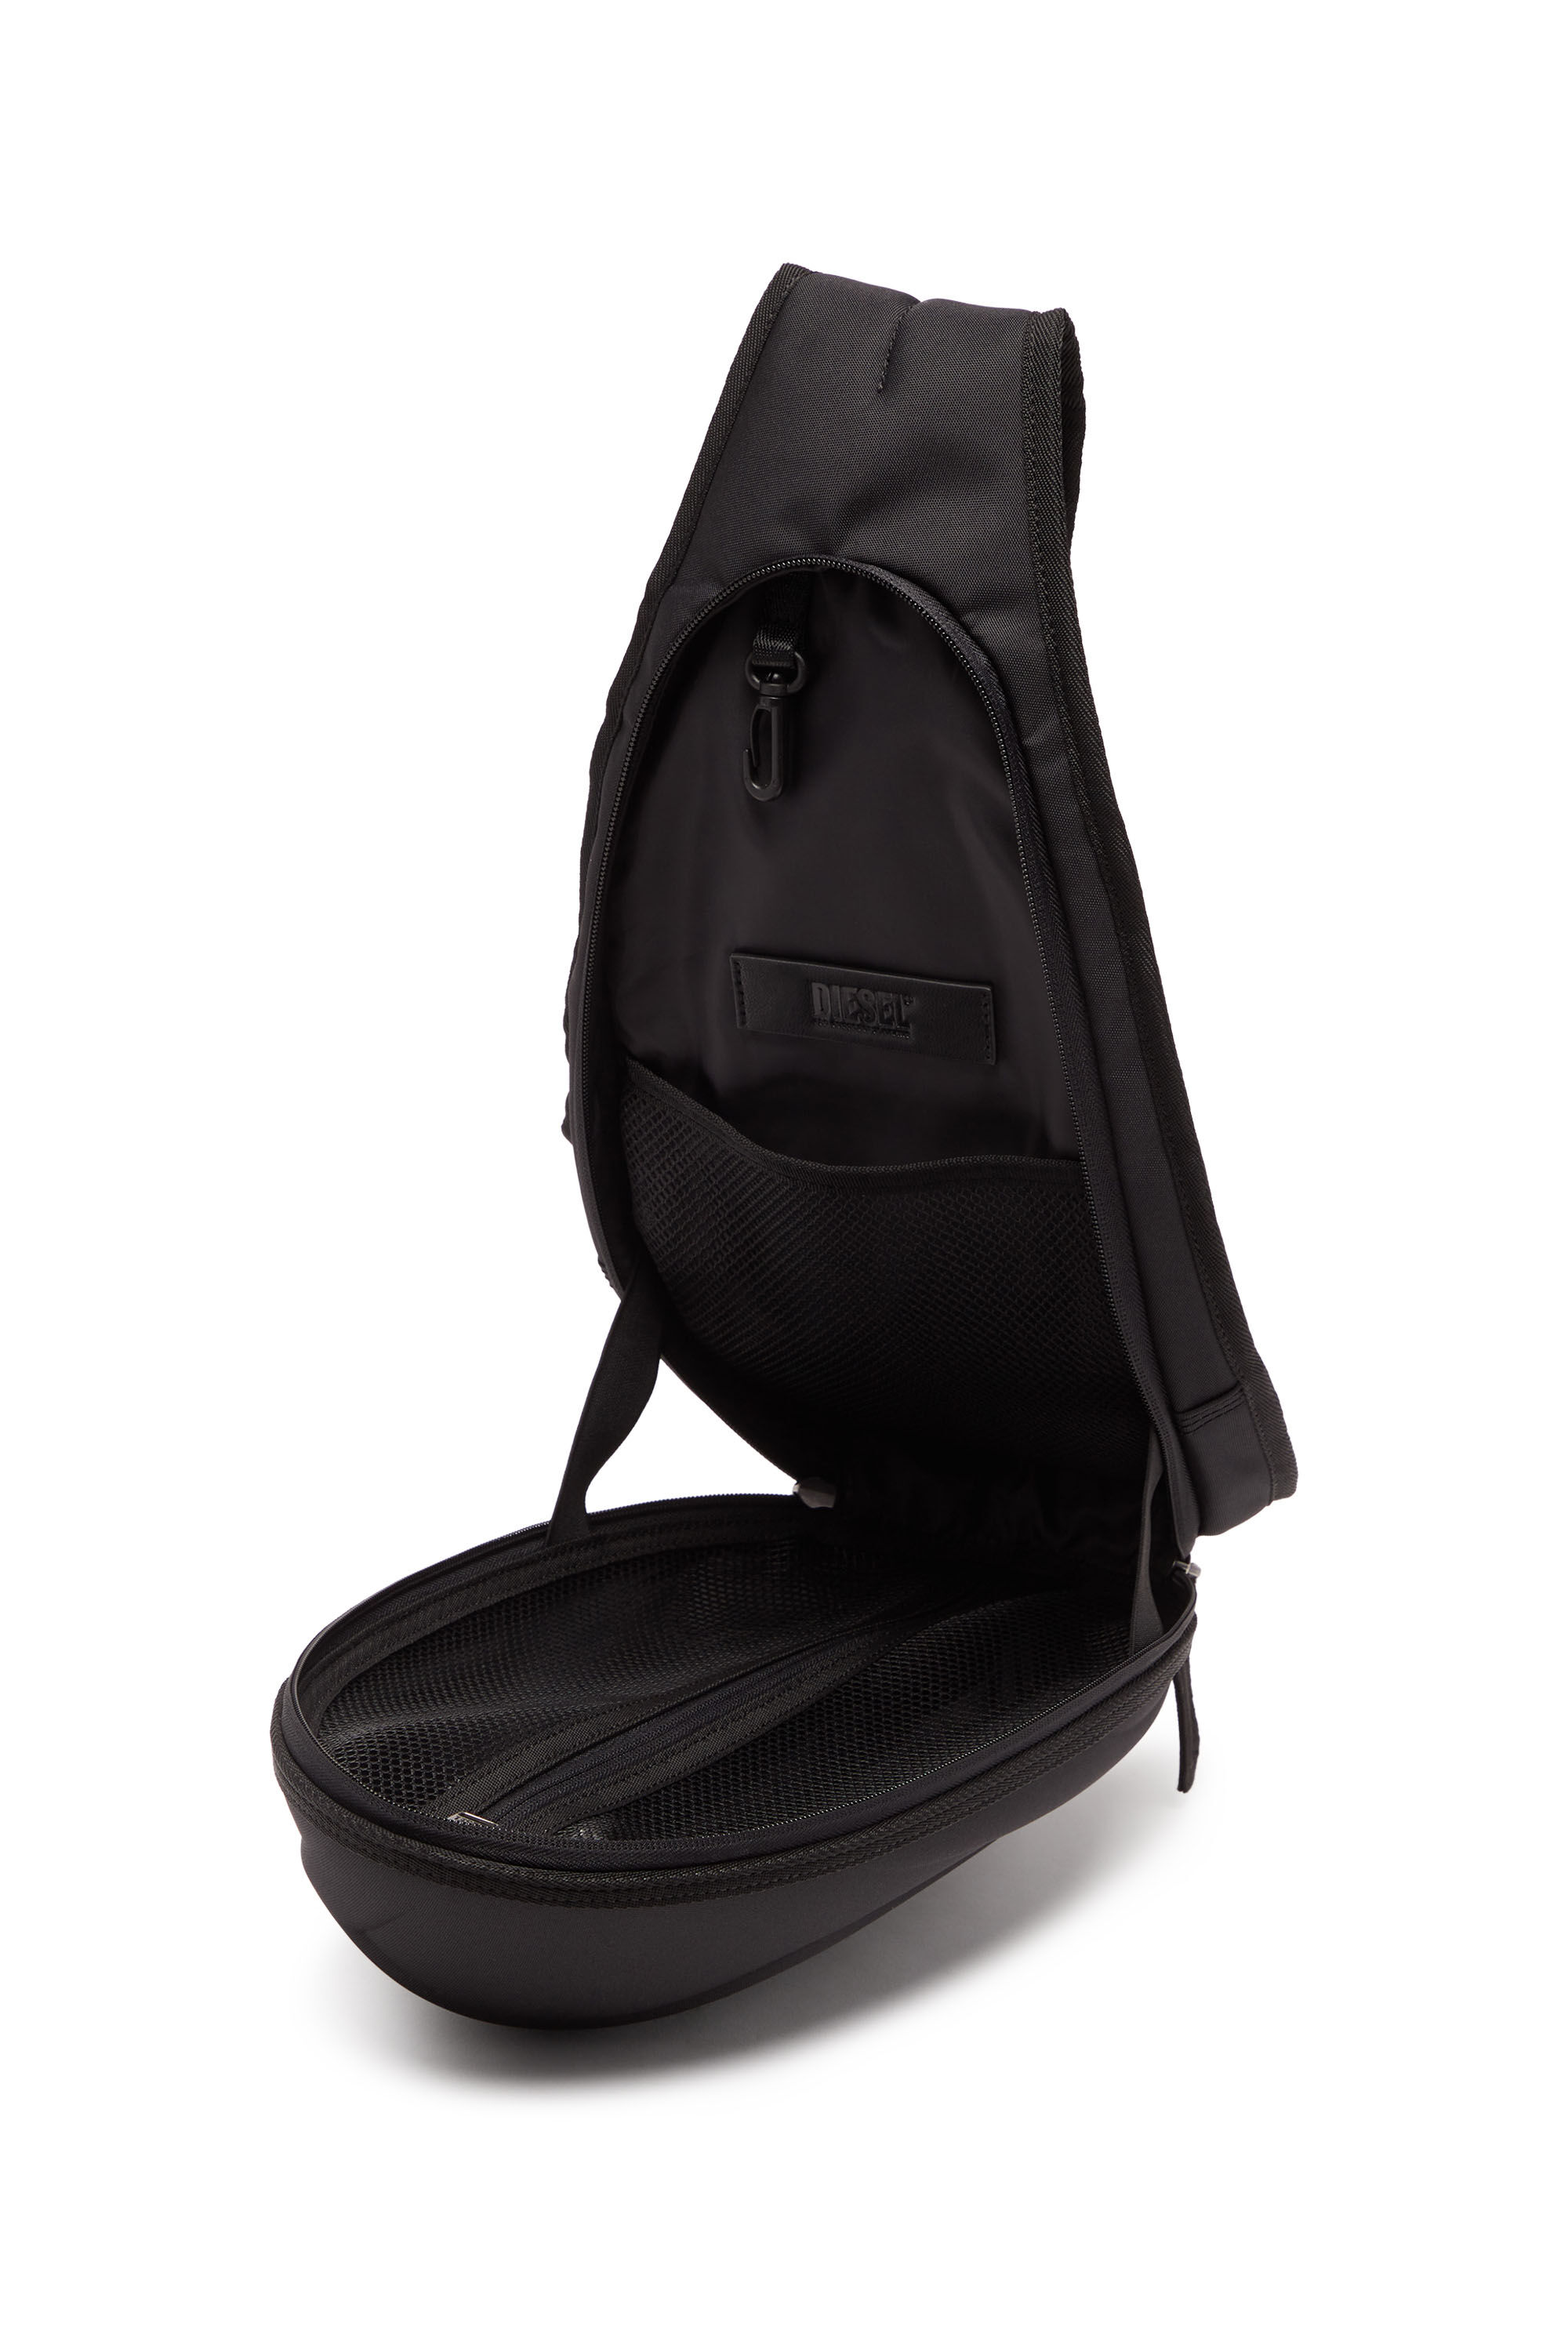 Diesel - 1DR-POD SLING BAG, Man 1DR-Pod Sling Bag - Hard shell sling backpack in Black - Image 2